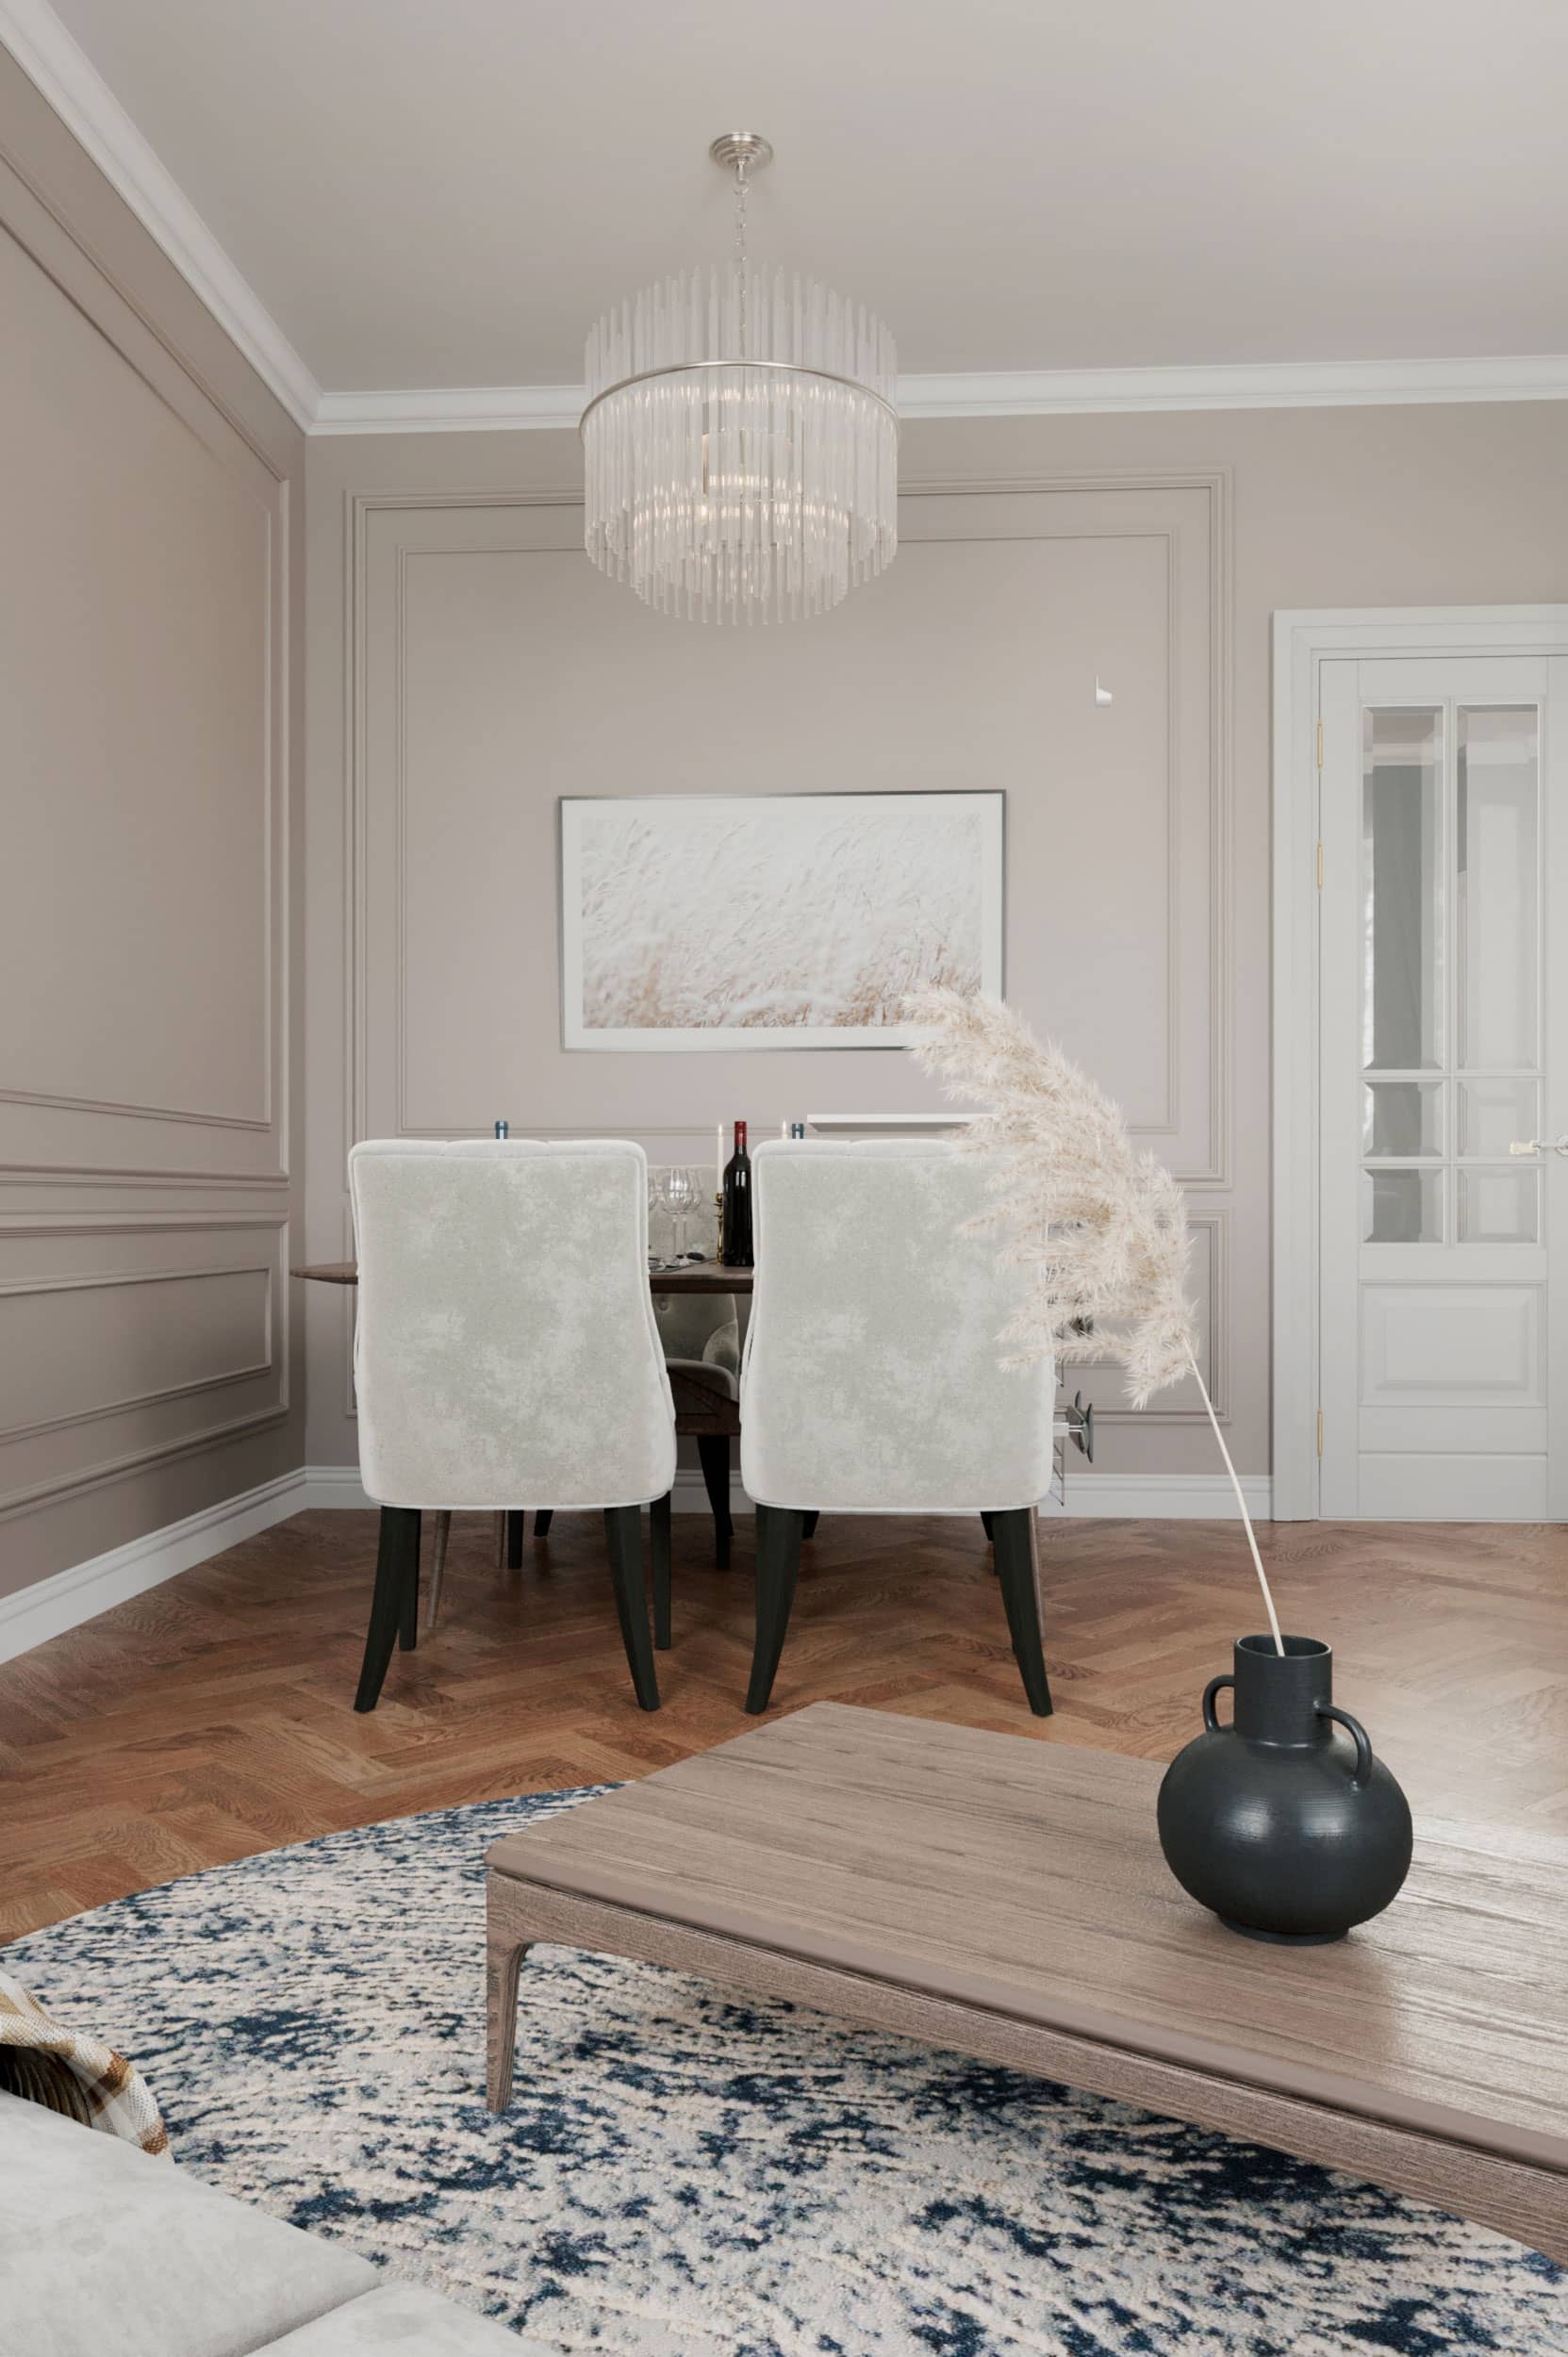 Оформление интерьера гостиной трехкомнатной квартиры в коричневый цвет в стиле современной классики. Фото № 62282.